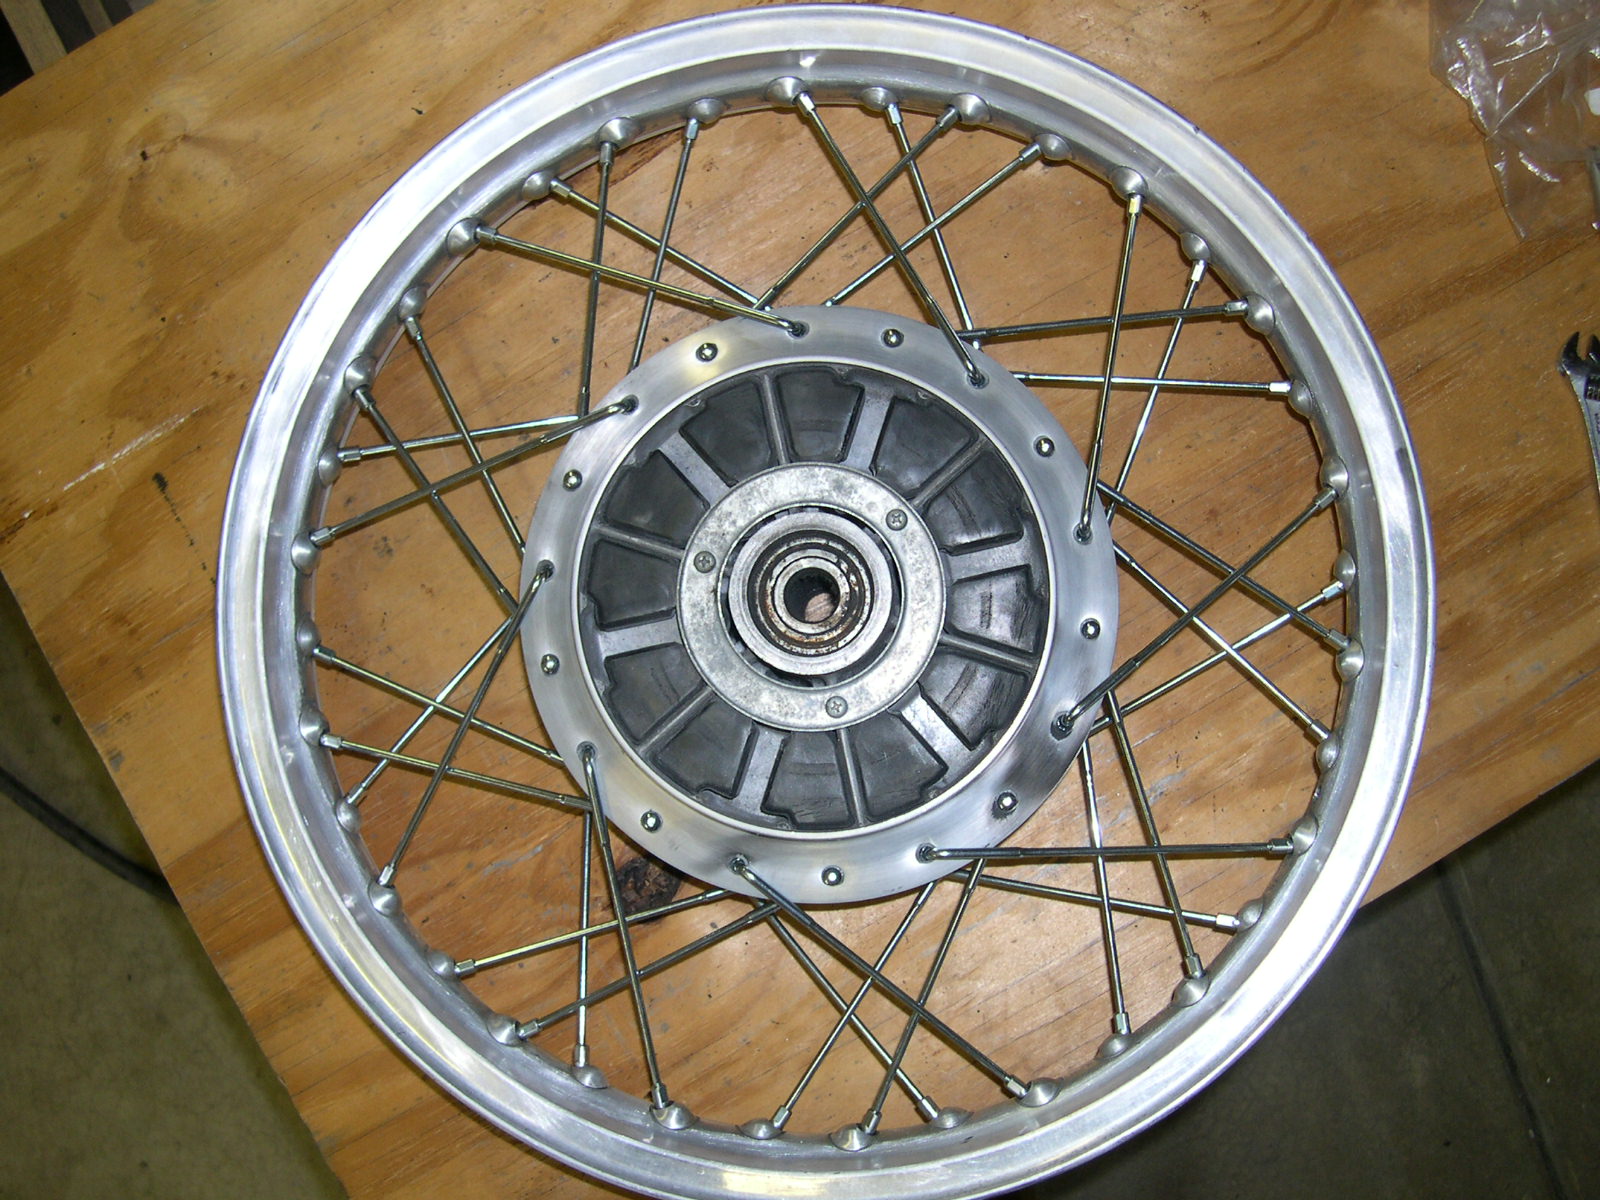 Spoke Wheel Lacing